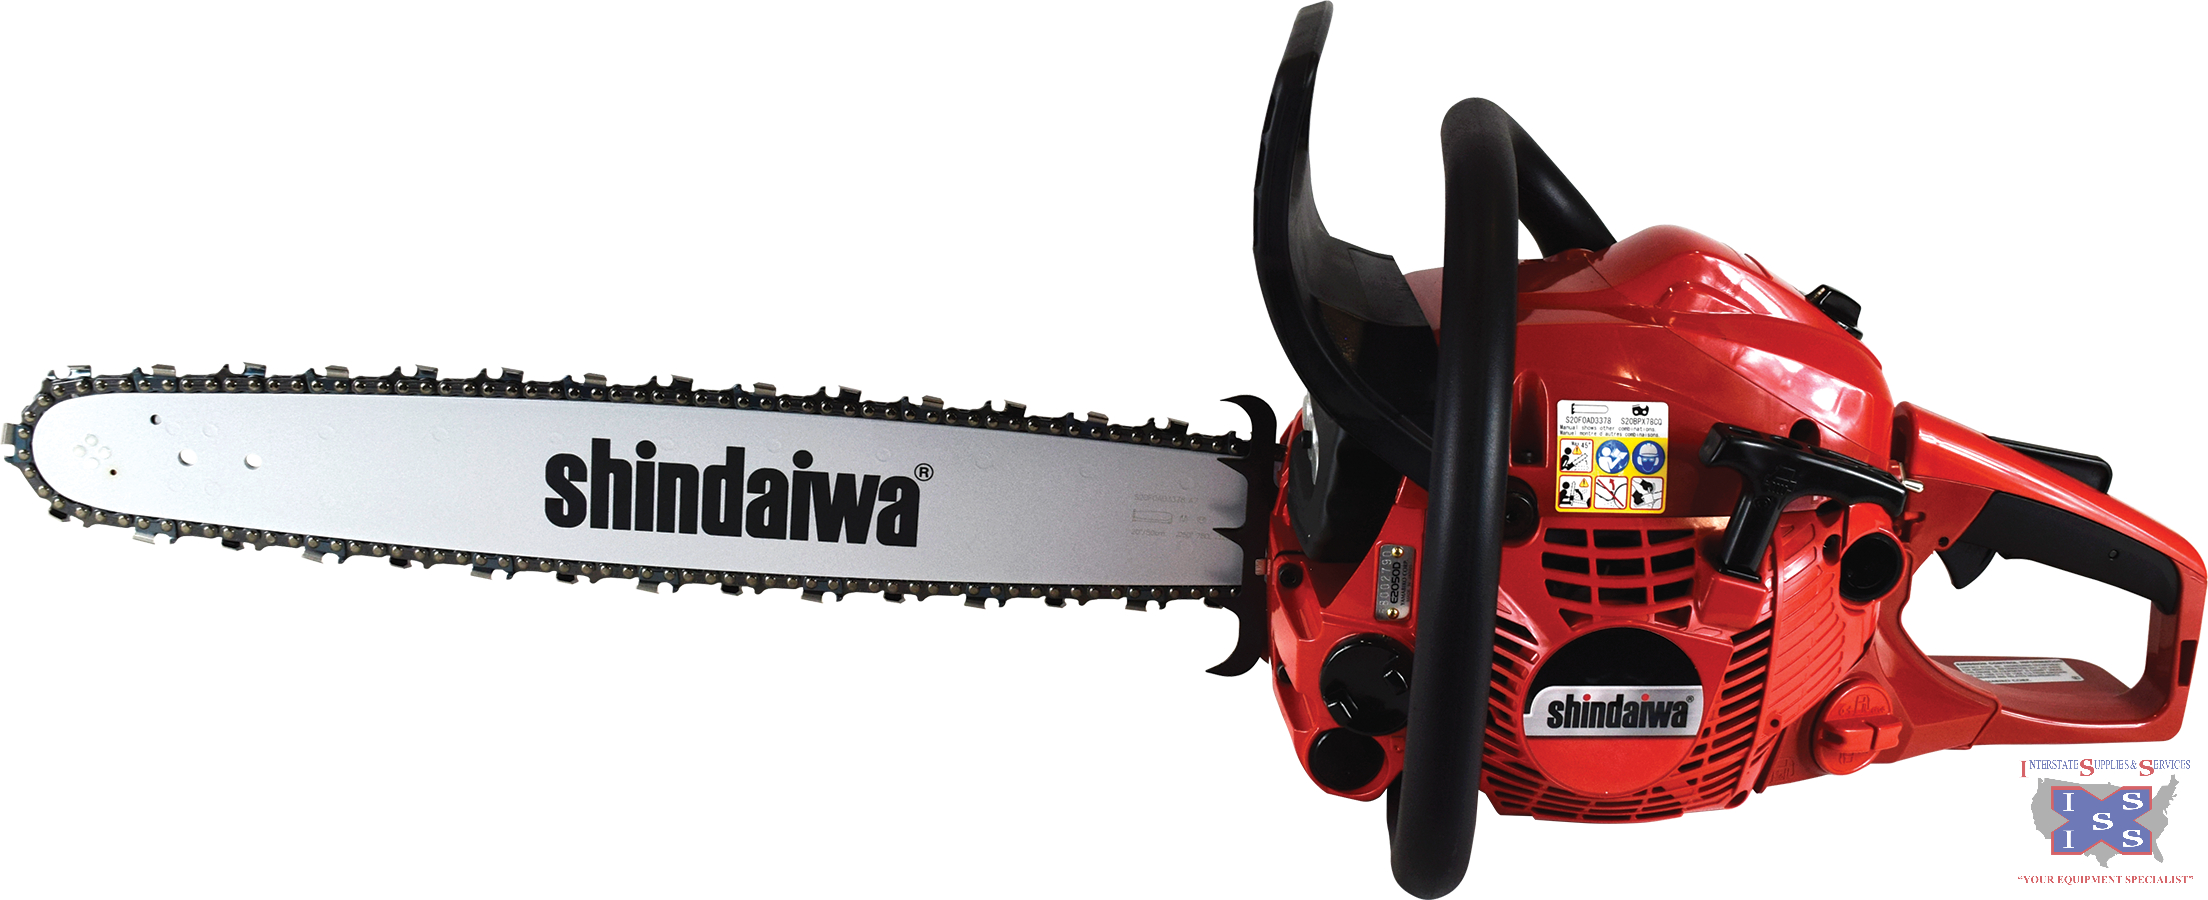 Shindaiwa 50.2cc engine, 20" bar 492 Chainsaw